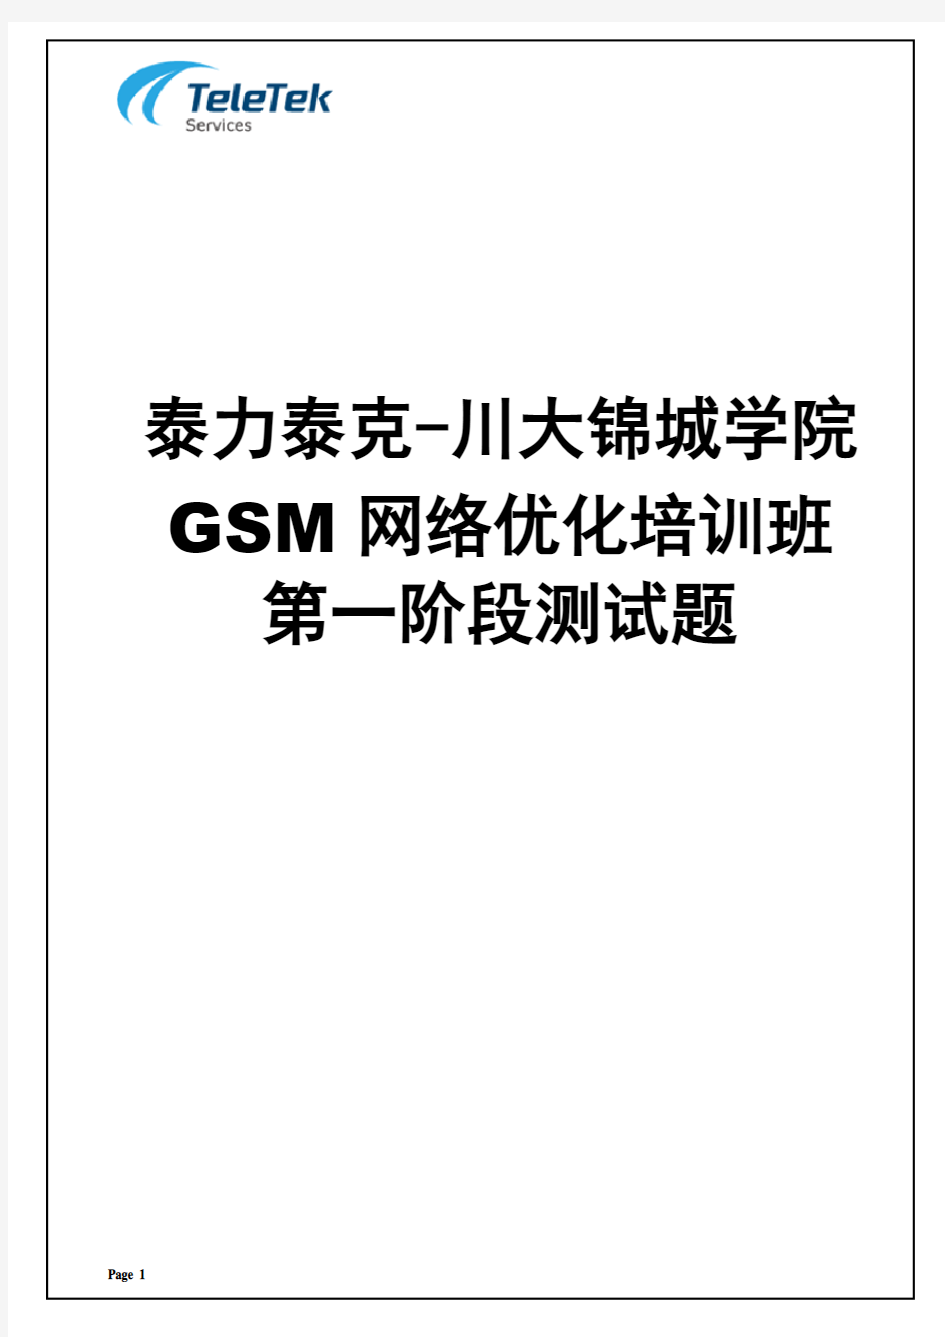 泰力泰克GSM网络优化培训班第一阶段测试题V1.0(整卷备份)